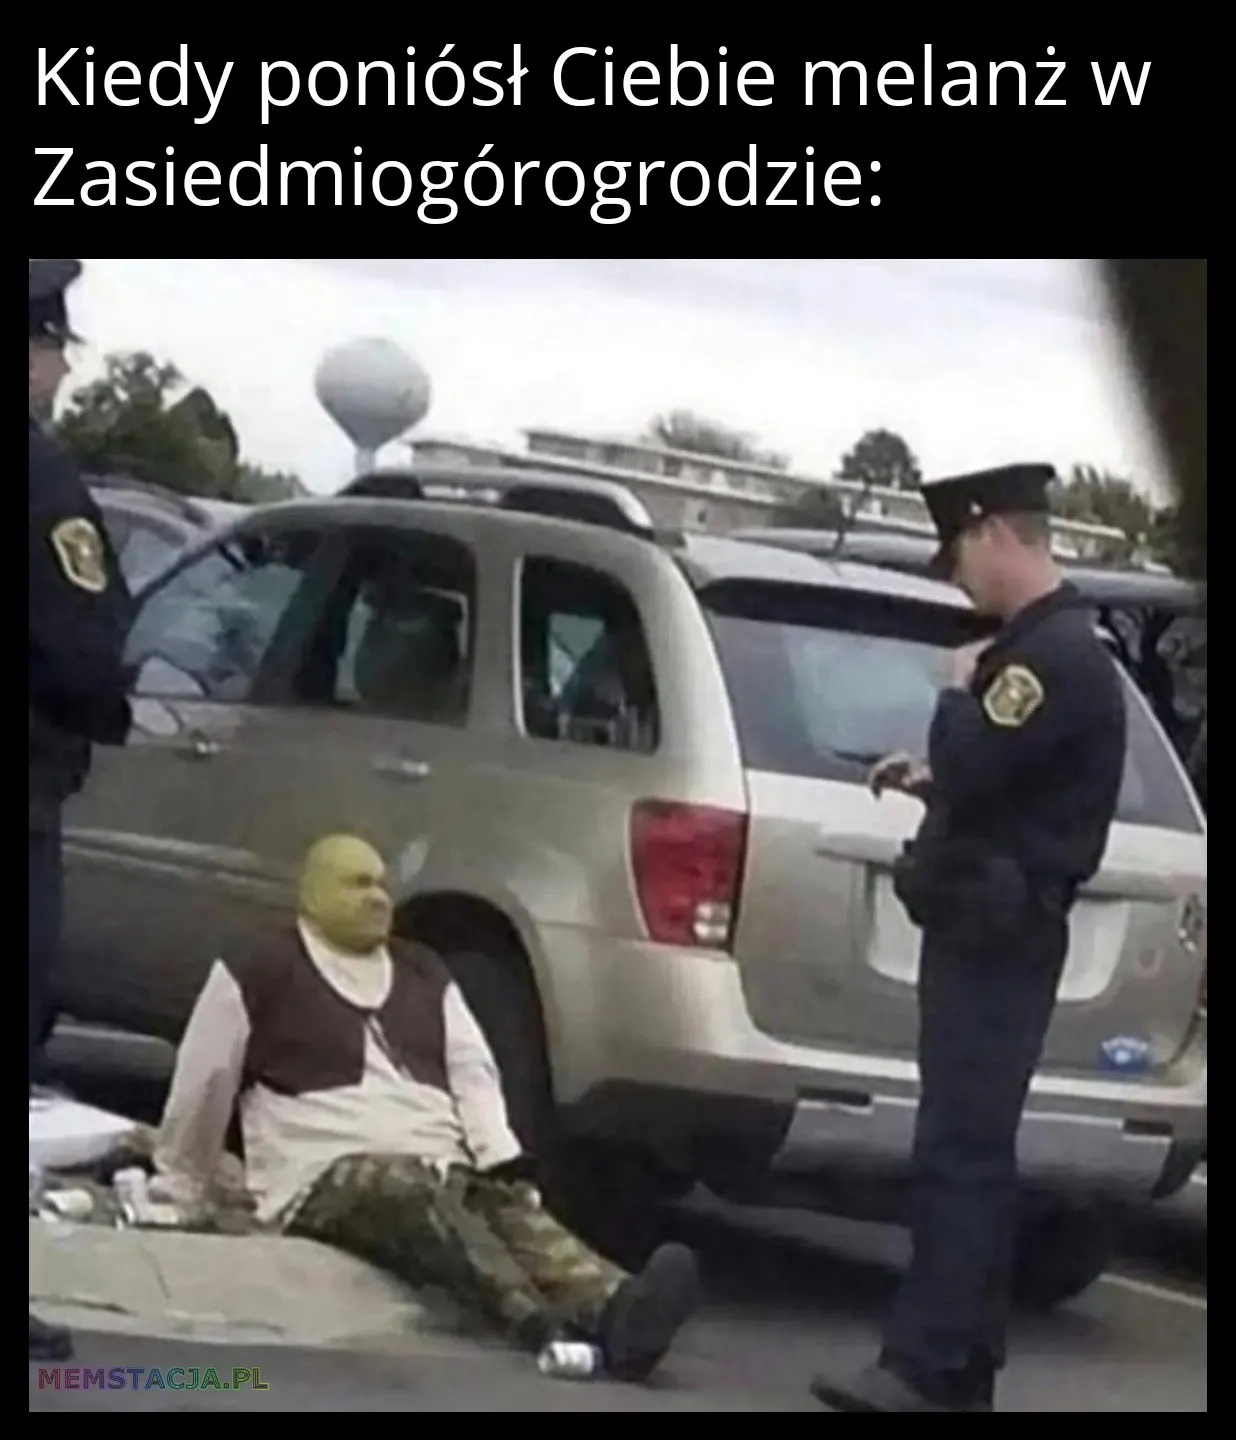 Mem przedstawiający policjantów patrzących na mężczyznę przypominającego Shreka, który siedzi na ziemi.